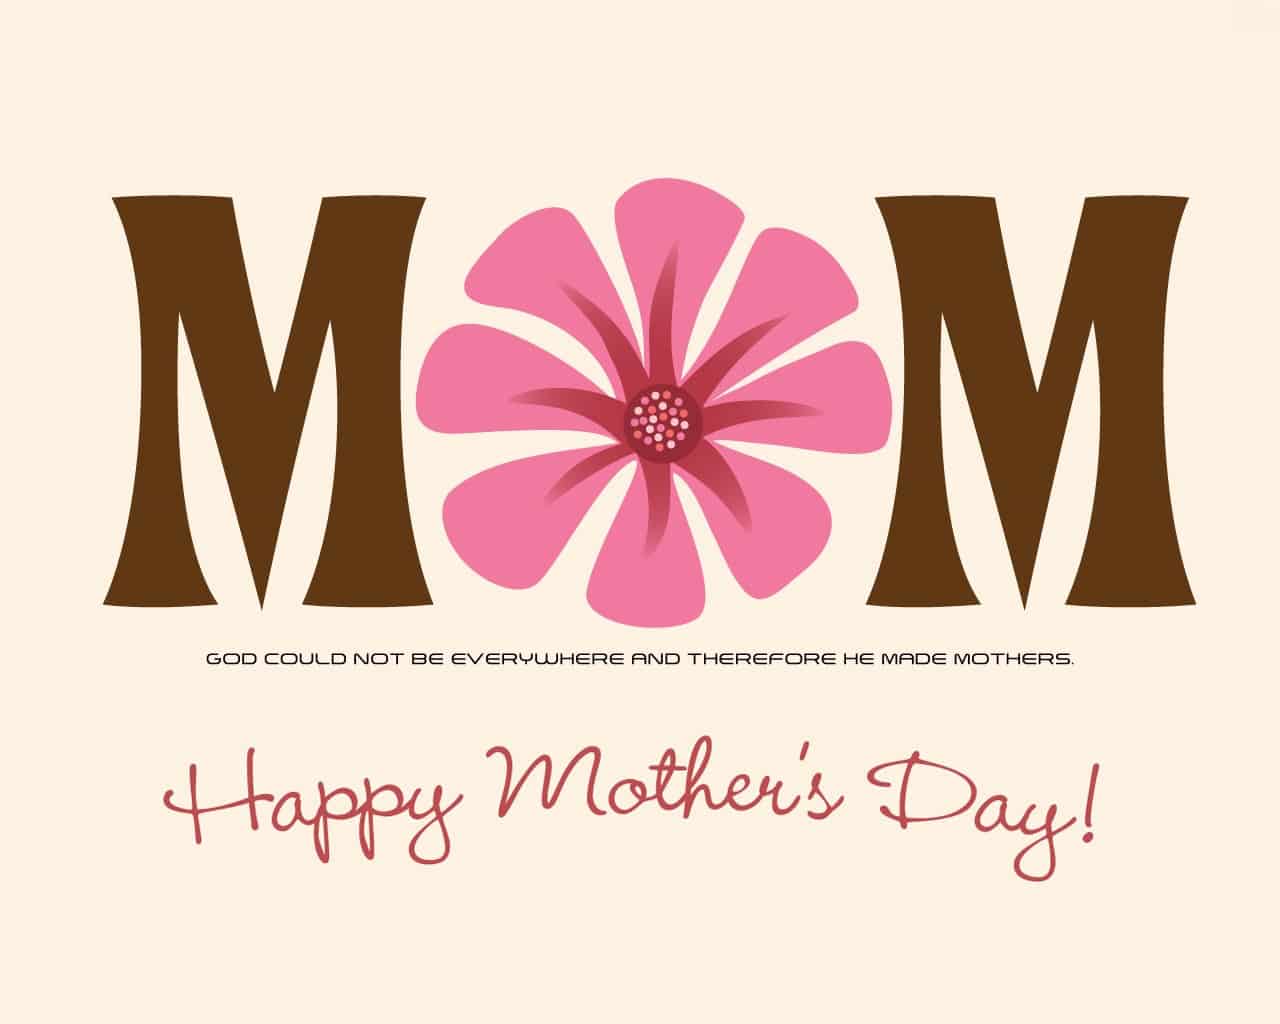 صور وكروت وبطاقات معايدة لعيد الأم - Happy Mother's Day 2020 190